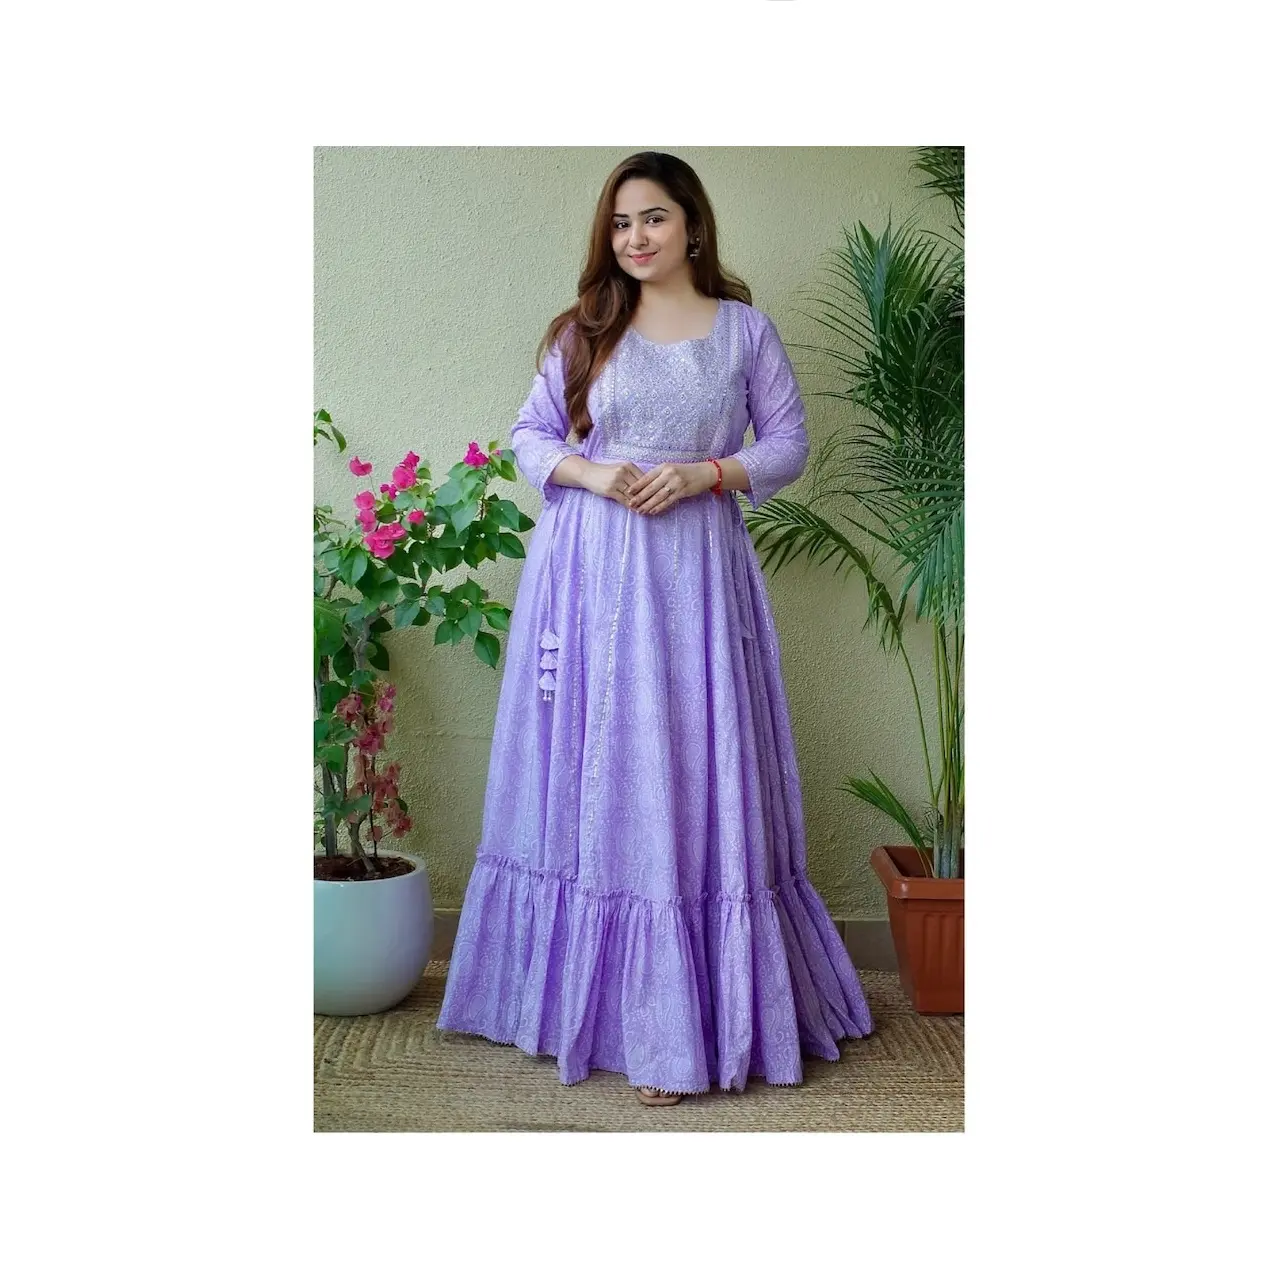 Nuovo Design moderno tessuto Rayon abbigliamento donna Kurti per abbigliamento da festa disponibile a prezzo all'ingrosso dall'india